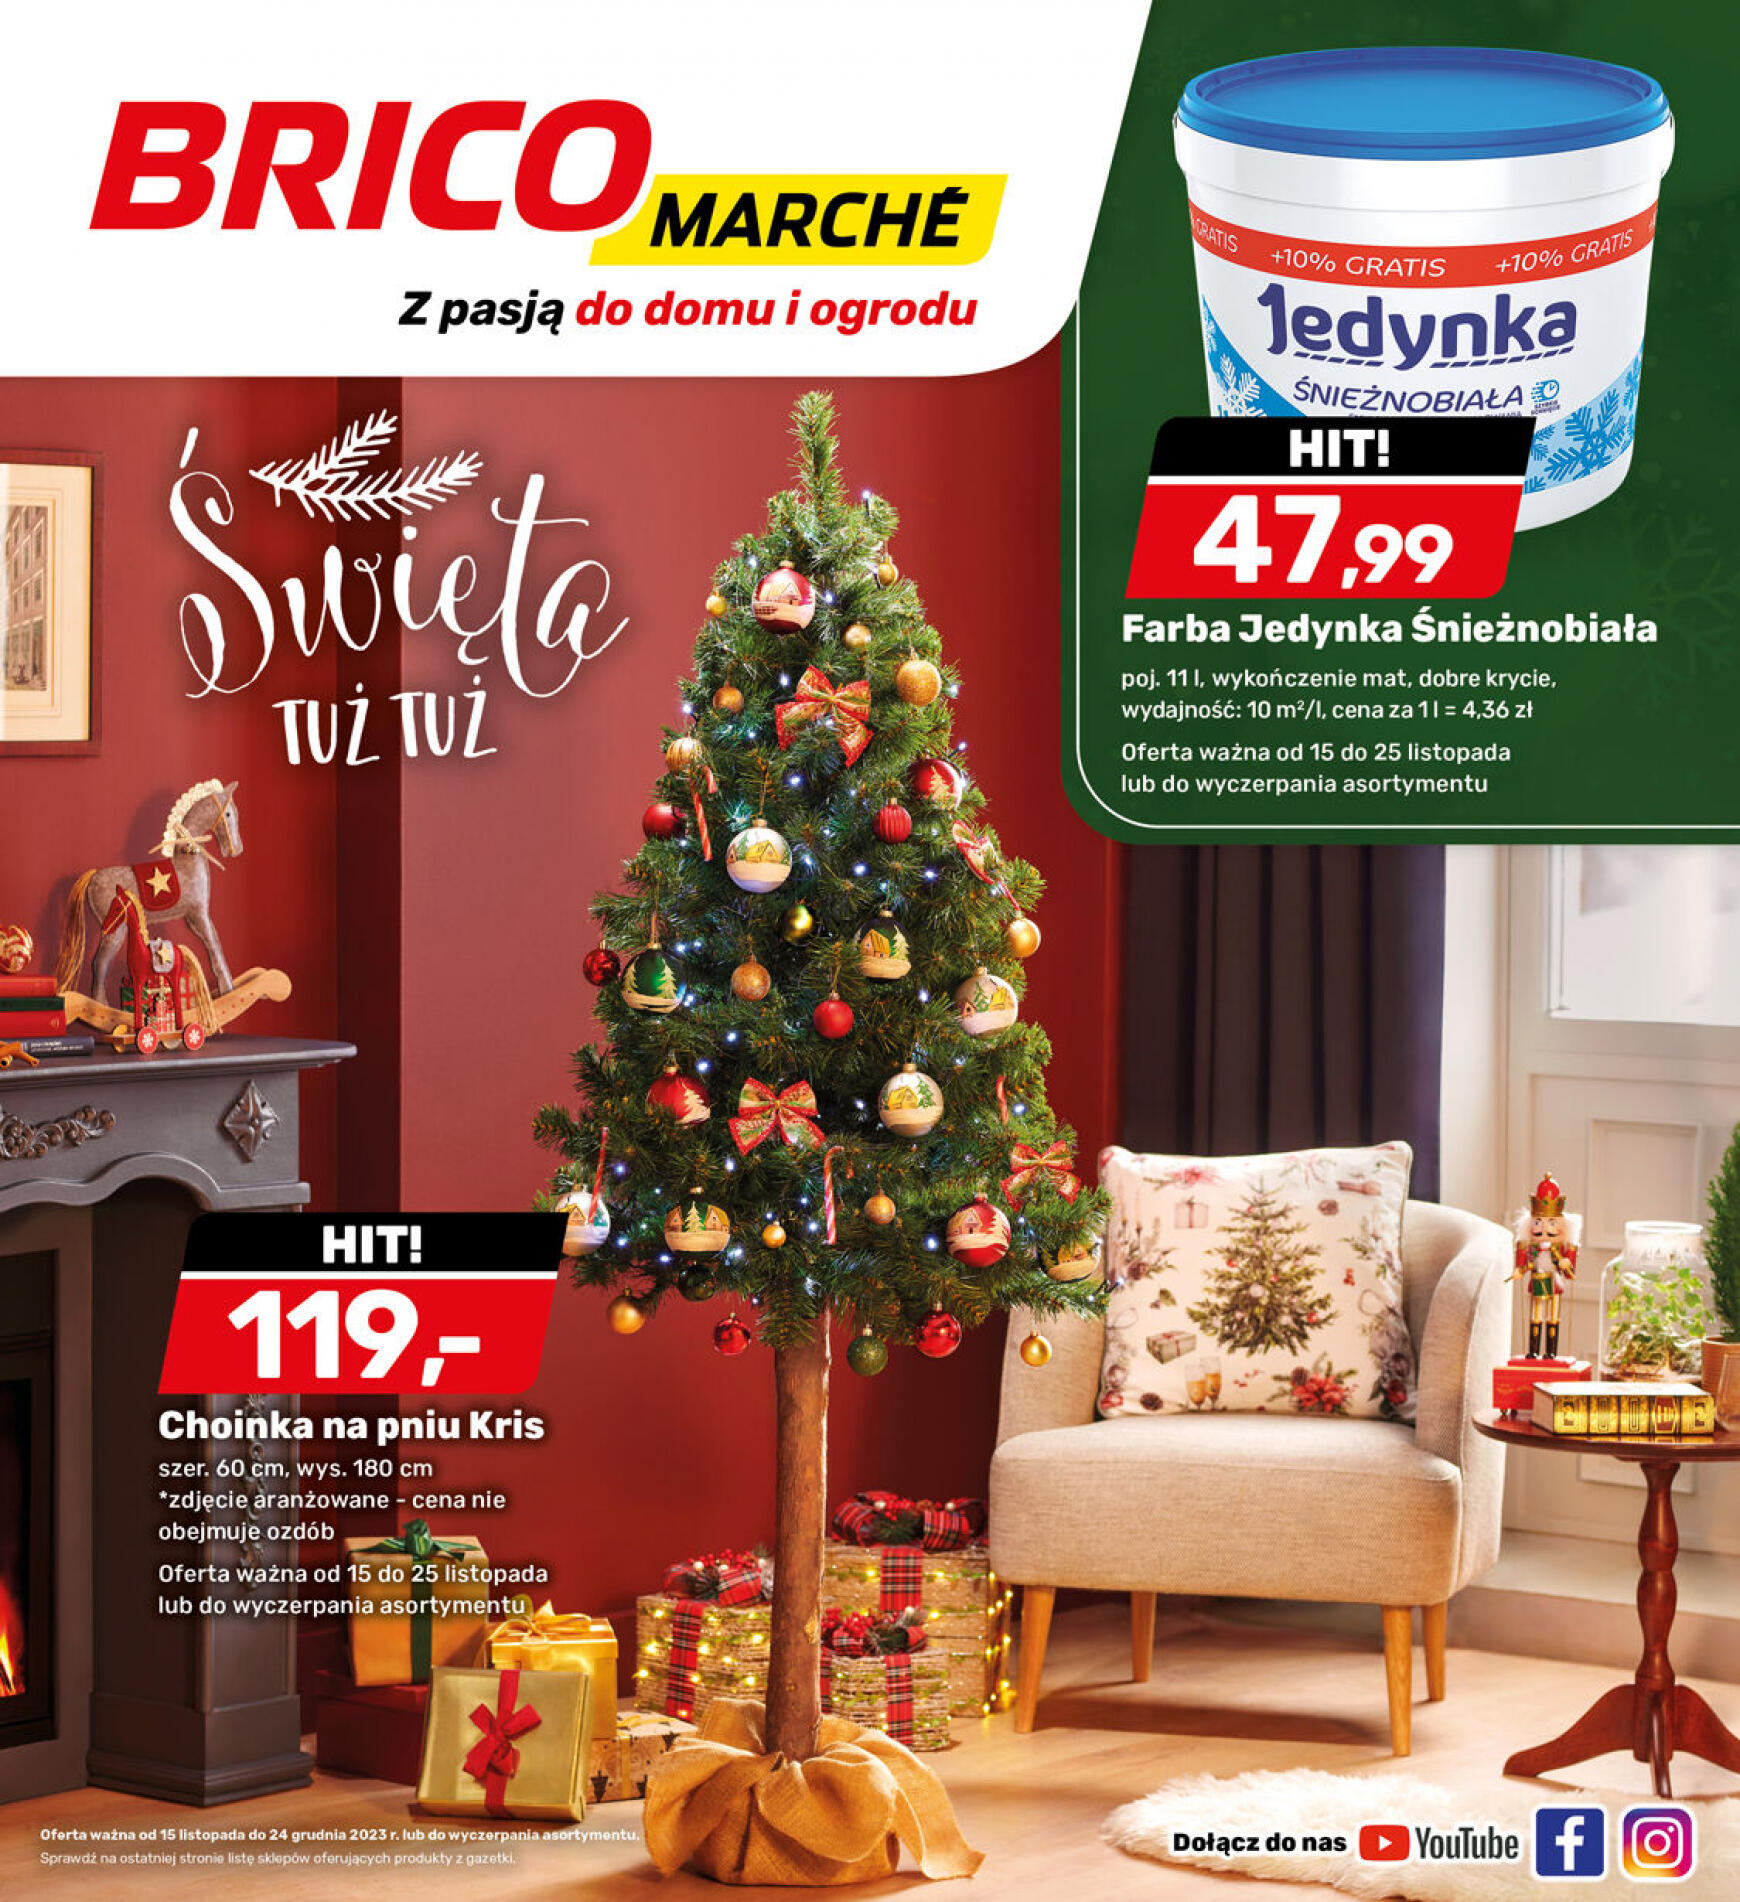 brico-marche - - Bricomarche - page: 13